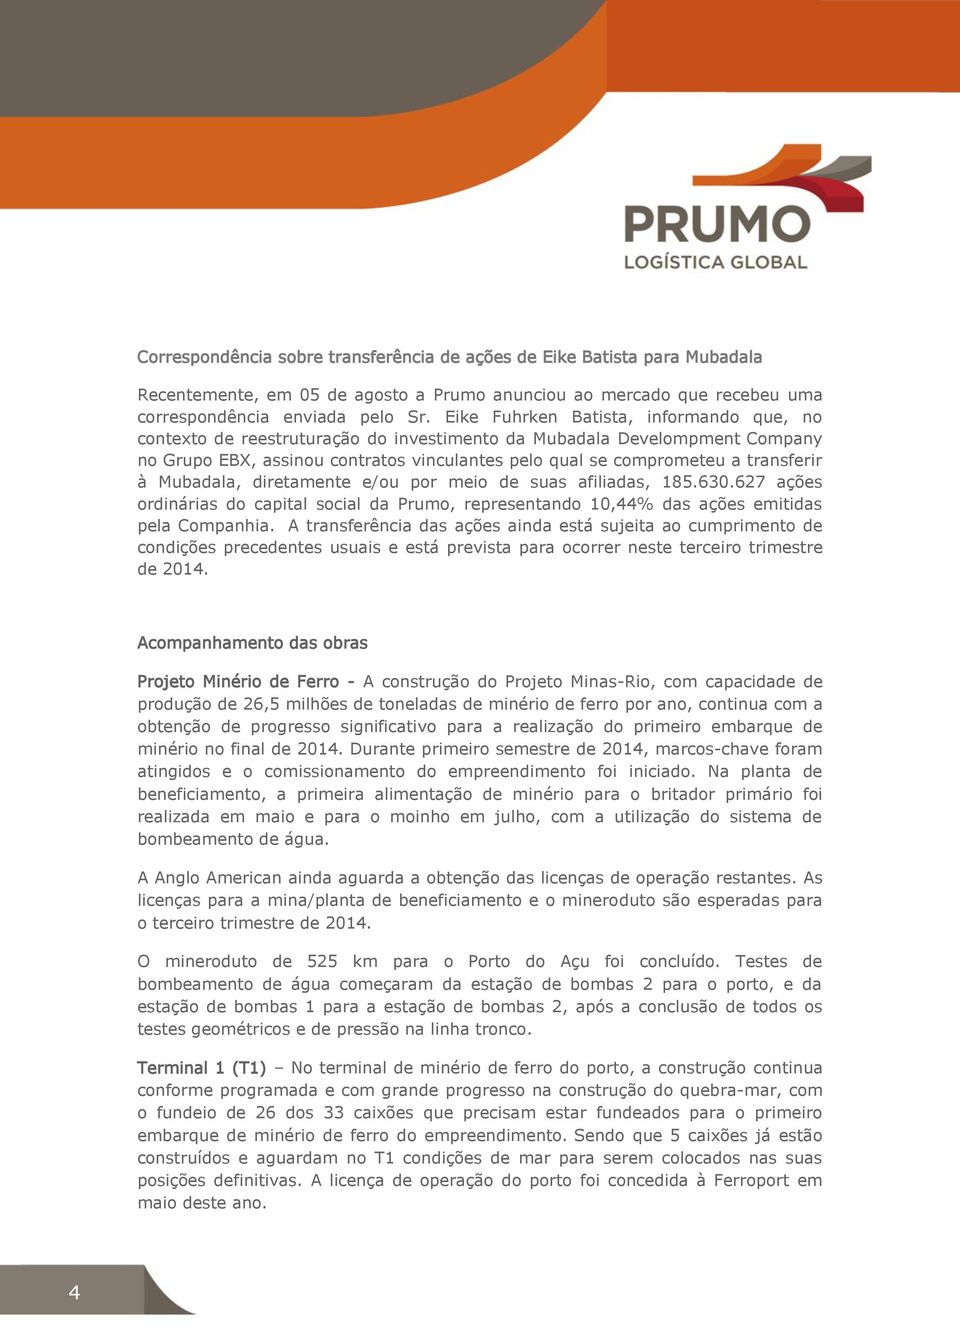 à Mubadala, diretamente e/ou por meio de suas afiliadas, 185.630.627 ações ordinárias do capital social da Prumo, representando 10,44% das ações emitidas pela Companhia.